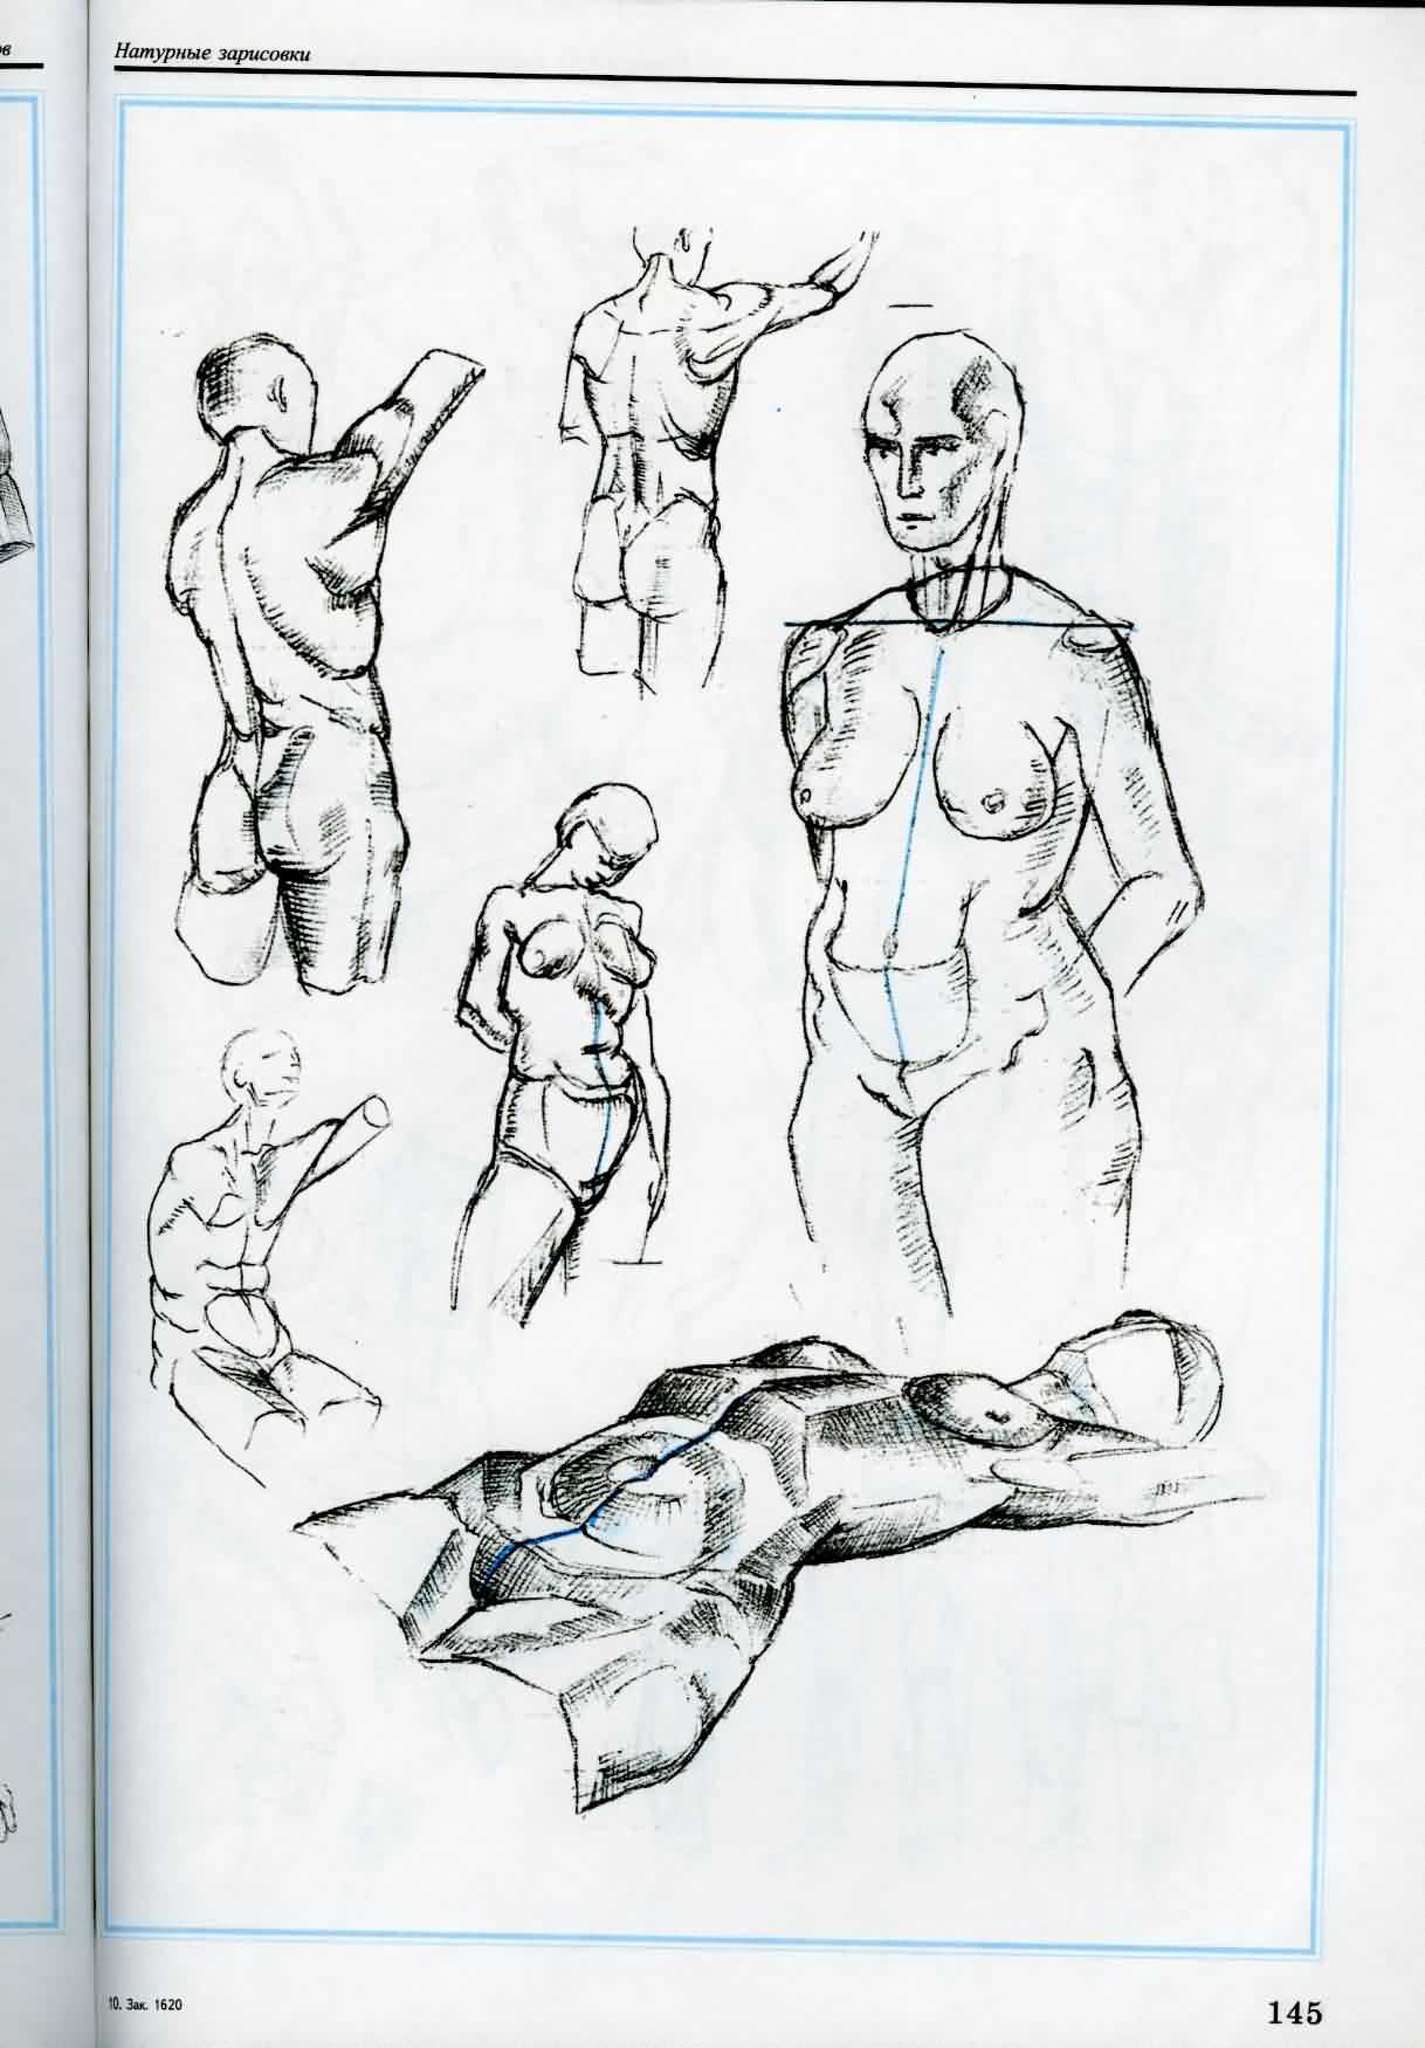 Атлас анатомии человека для художников